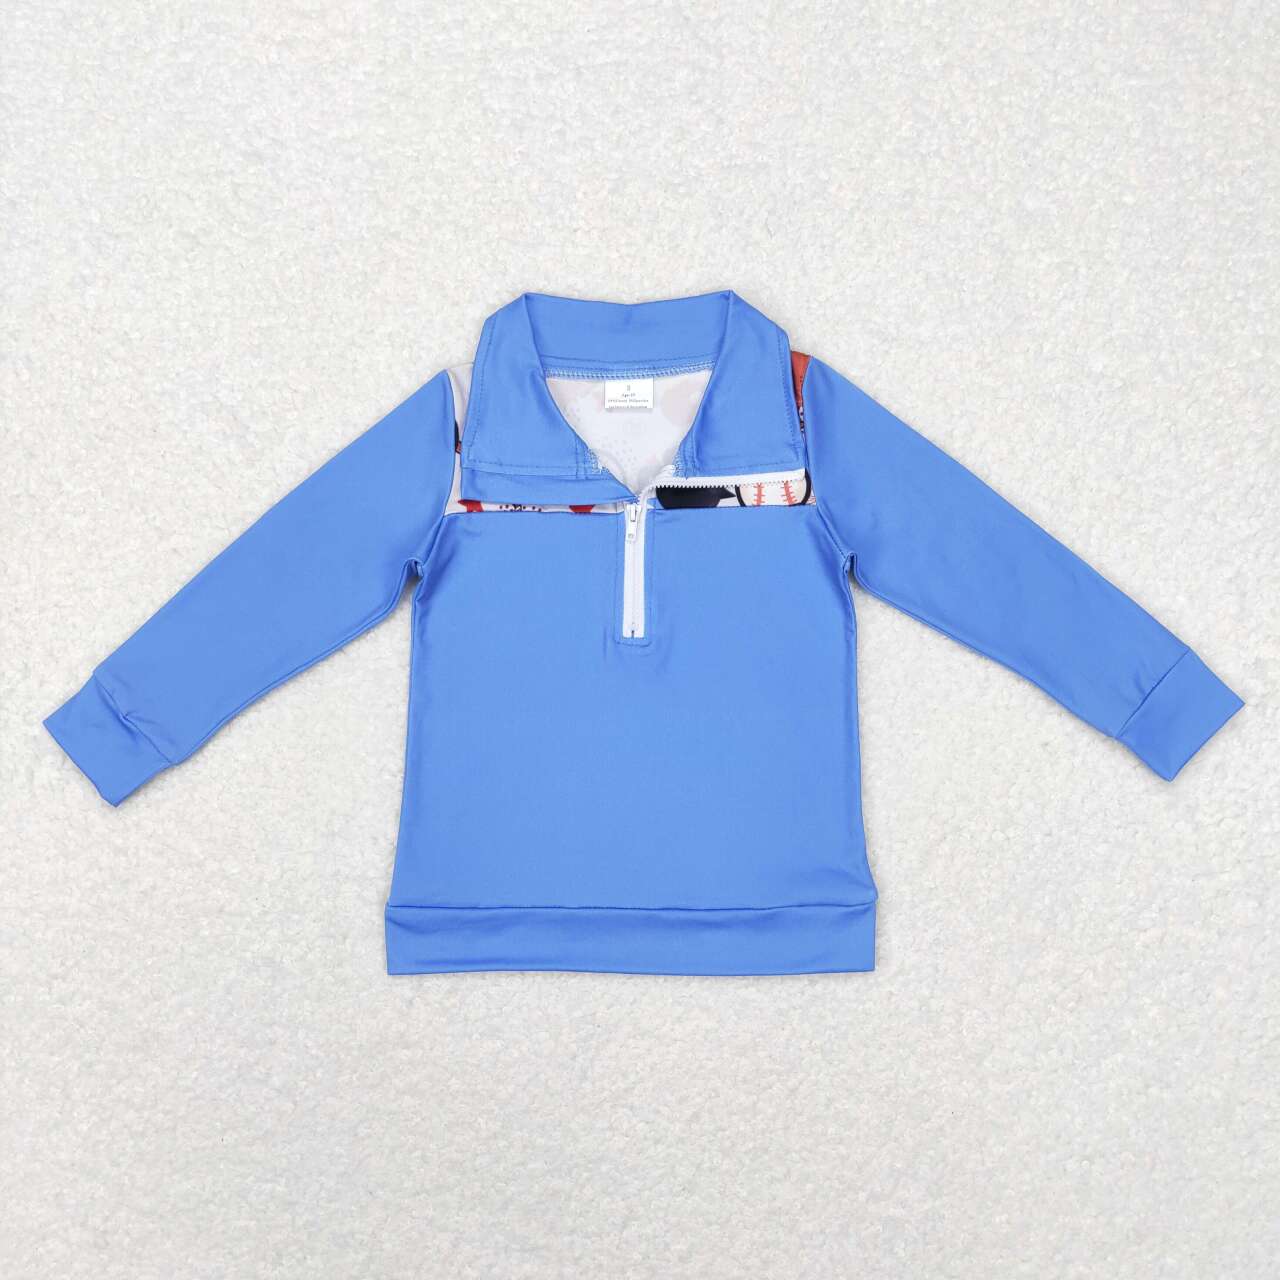 BT0466 Baseball Stars Blue Zip Long Sleeve Top